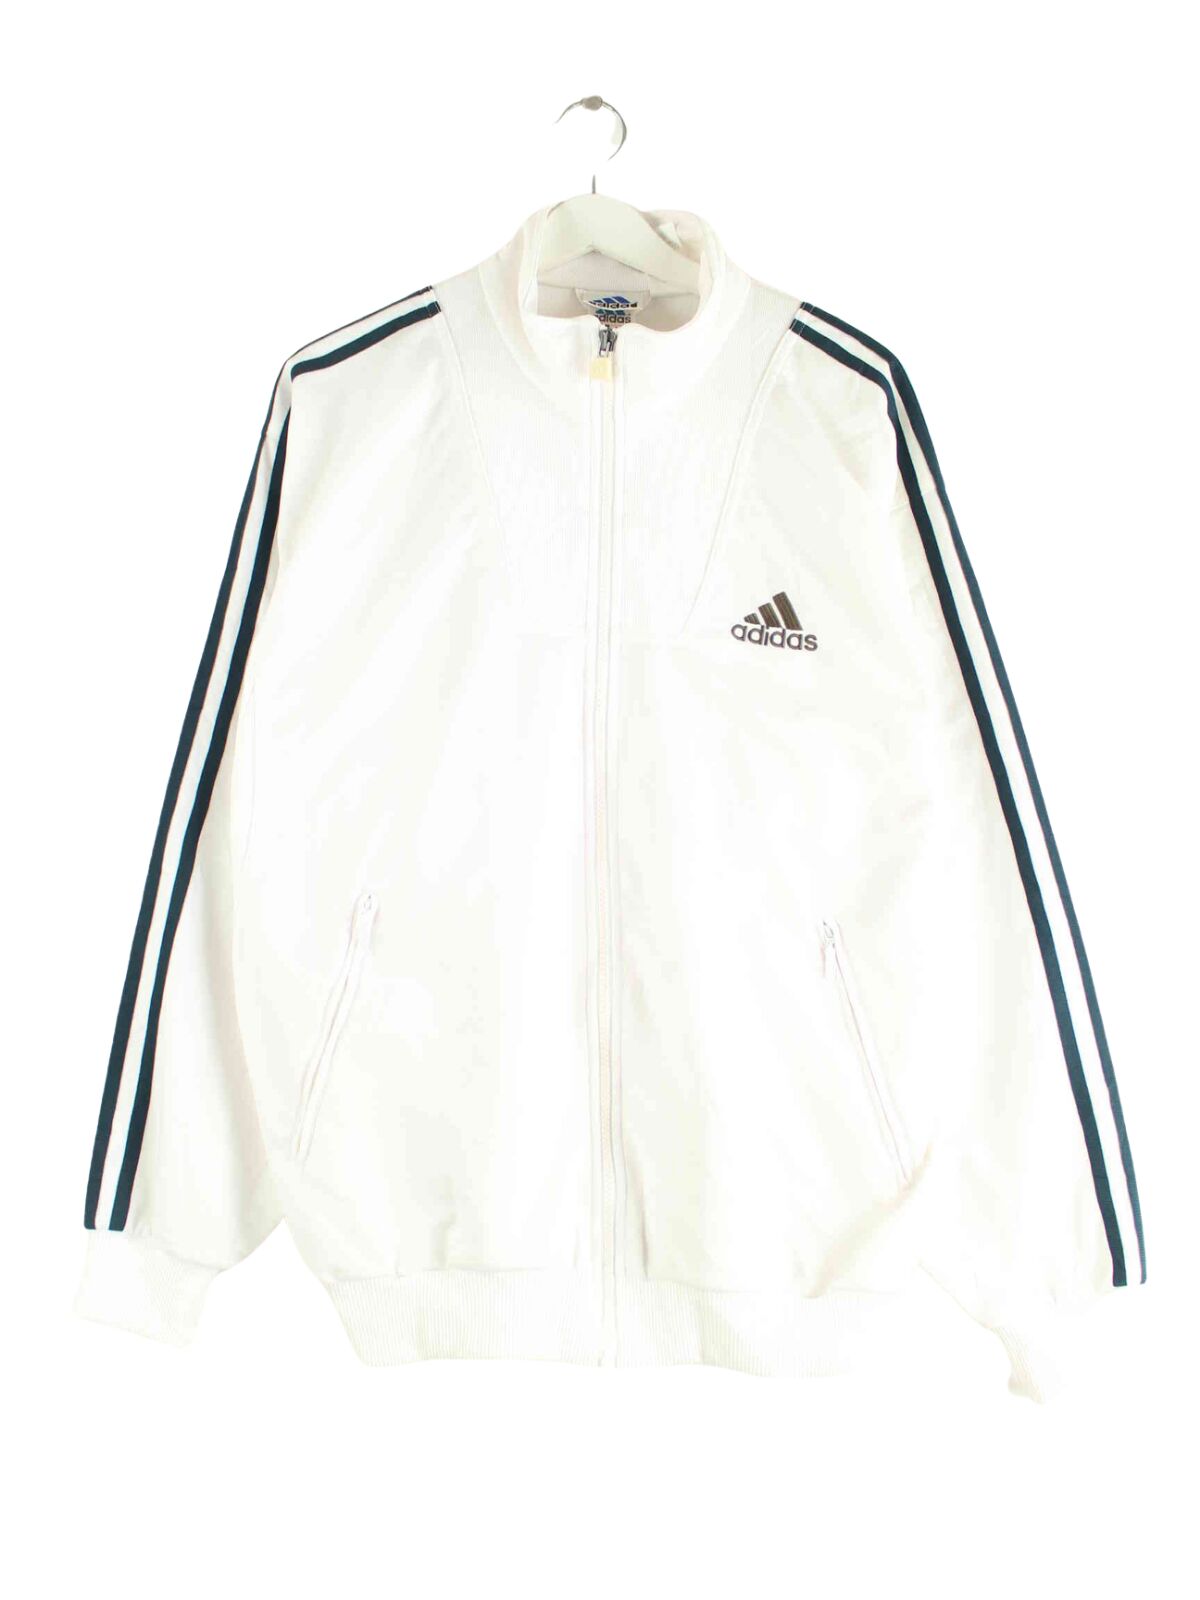 Adidas 90s Vintage Performance Trainingsjacke Weiß M (front image)